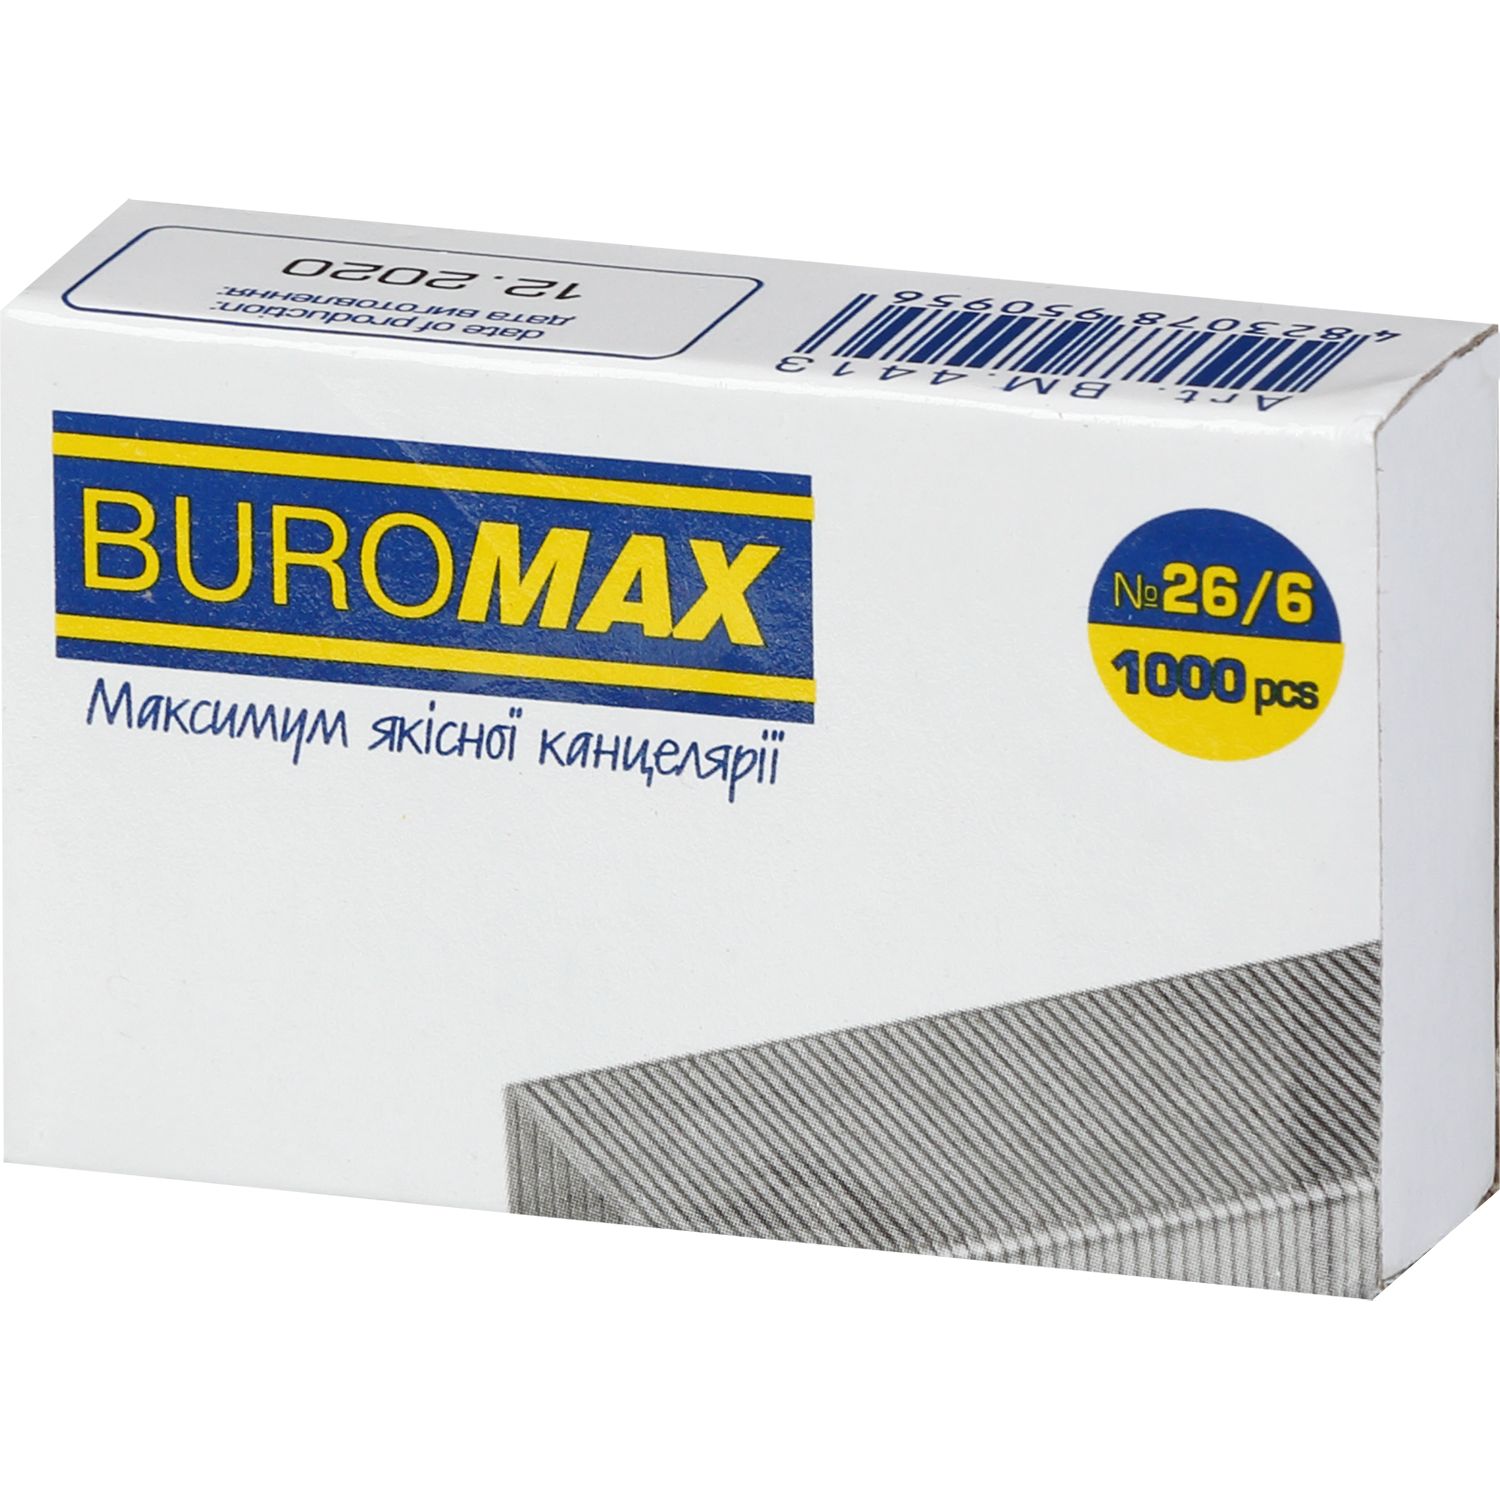 Скоби для степлерів Buromax Люкс №26/6 1000 шт. (BM.4413) - фото 1